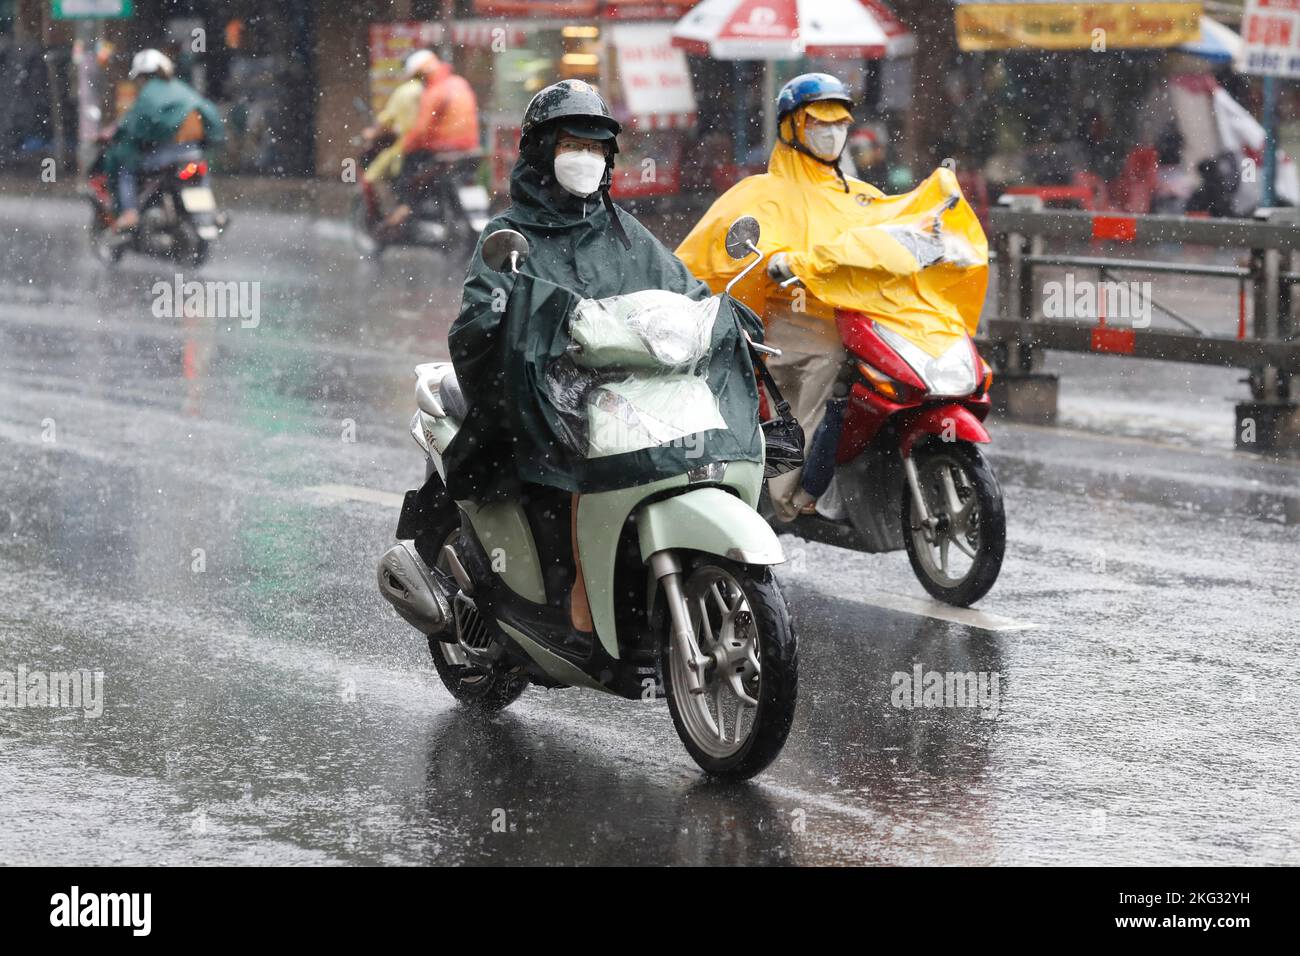 Vietnamesen mit Helm und Regenmantel fahren bei starkem Regen Motorrad, Wasser auf der Straße. Regenzeit in Saigon, Ho-Chi-Minh-Stadt. Vietnam. Stockfoto